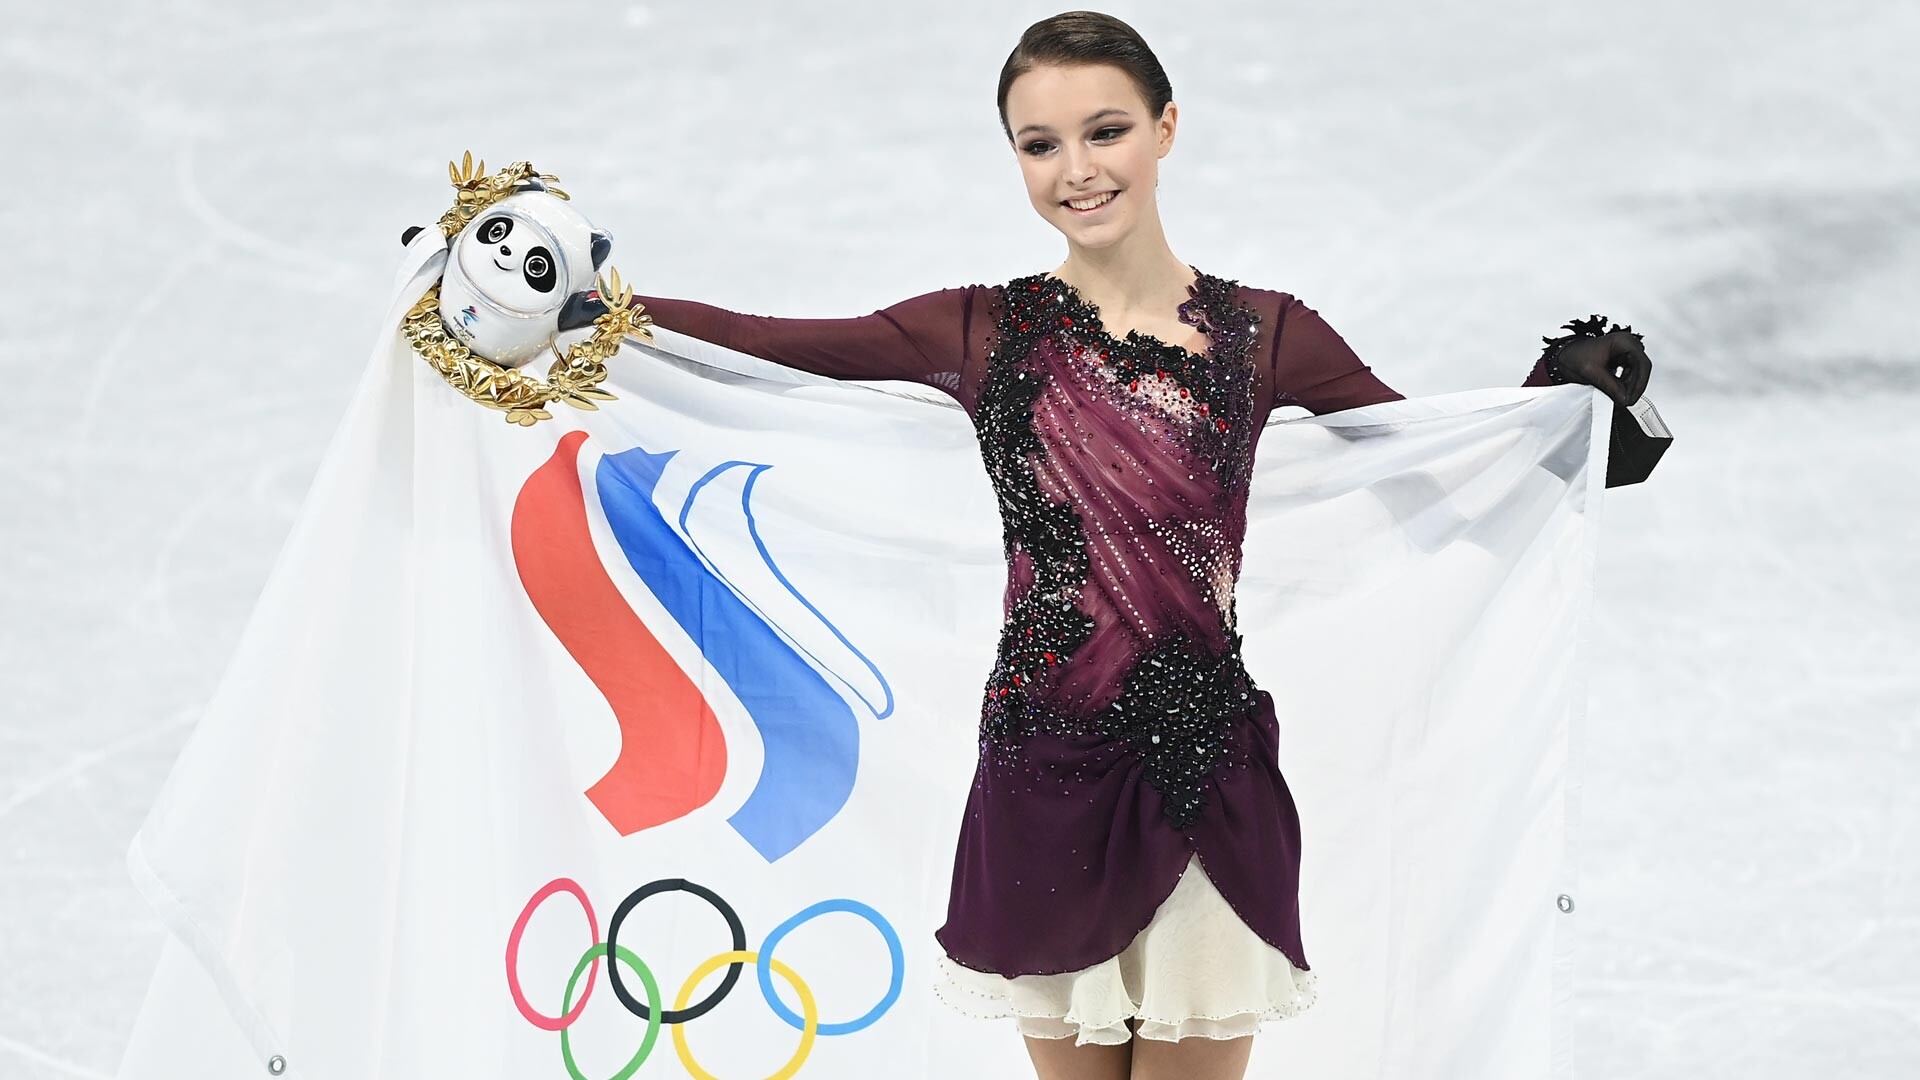 The 2022 Olympic champion, Anna Shcherbakova